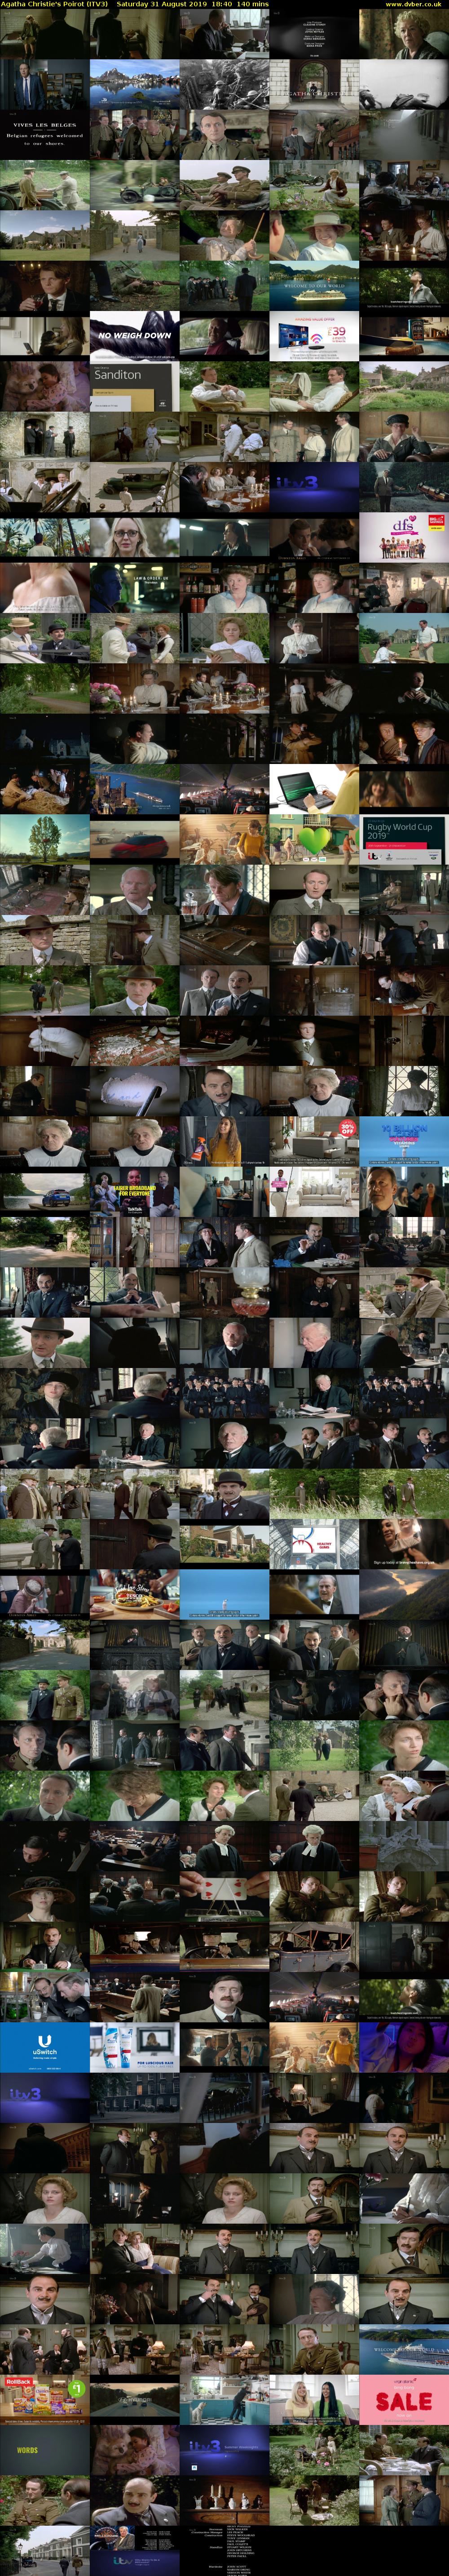 Agatha Christie's Poirot (ITV3) Saturday 31 August 2019 18:40 - 21:00